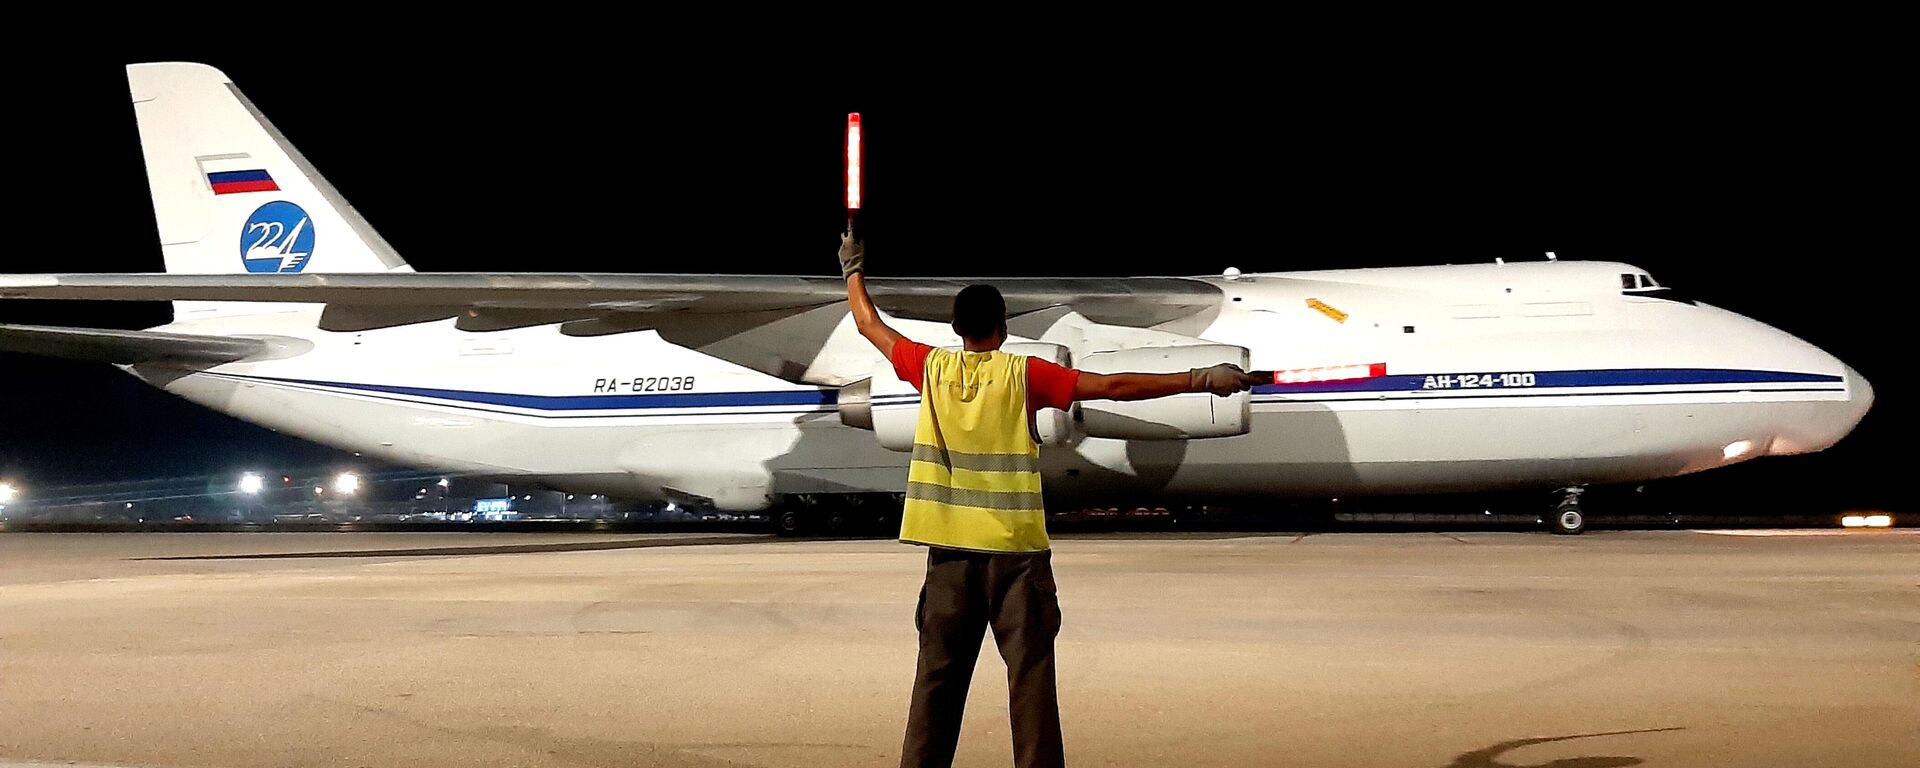 Aviones rusos An-124 Ruslan arriban a Cuba con cargamento de ayuda humanitaria - Sputnik Mundo, 1920, 02.03.2022